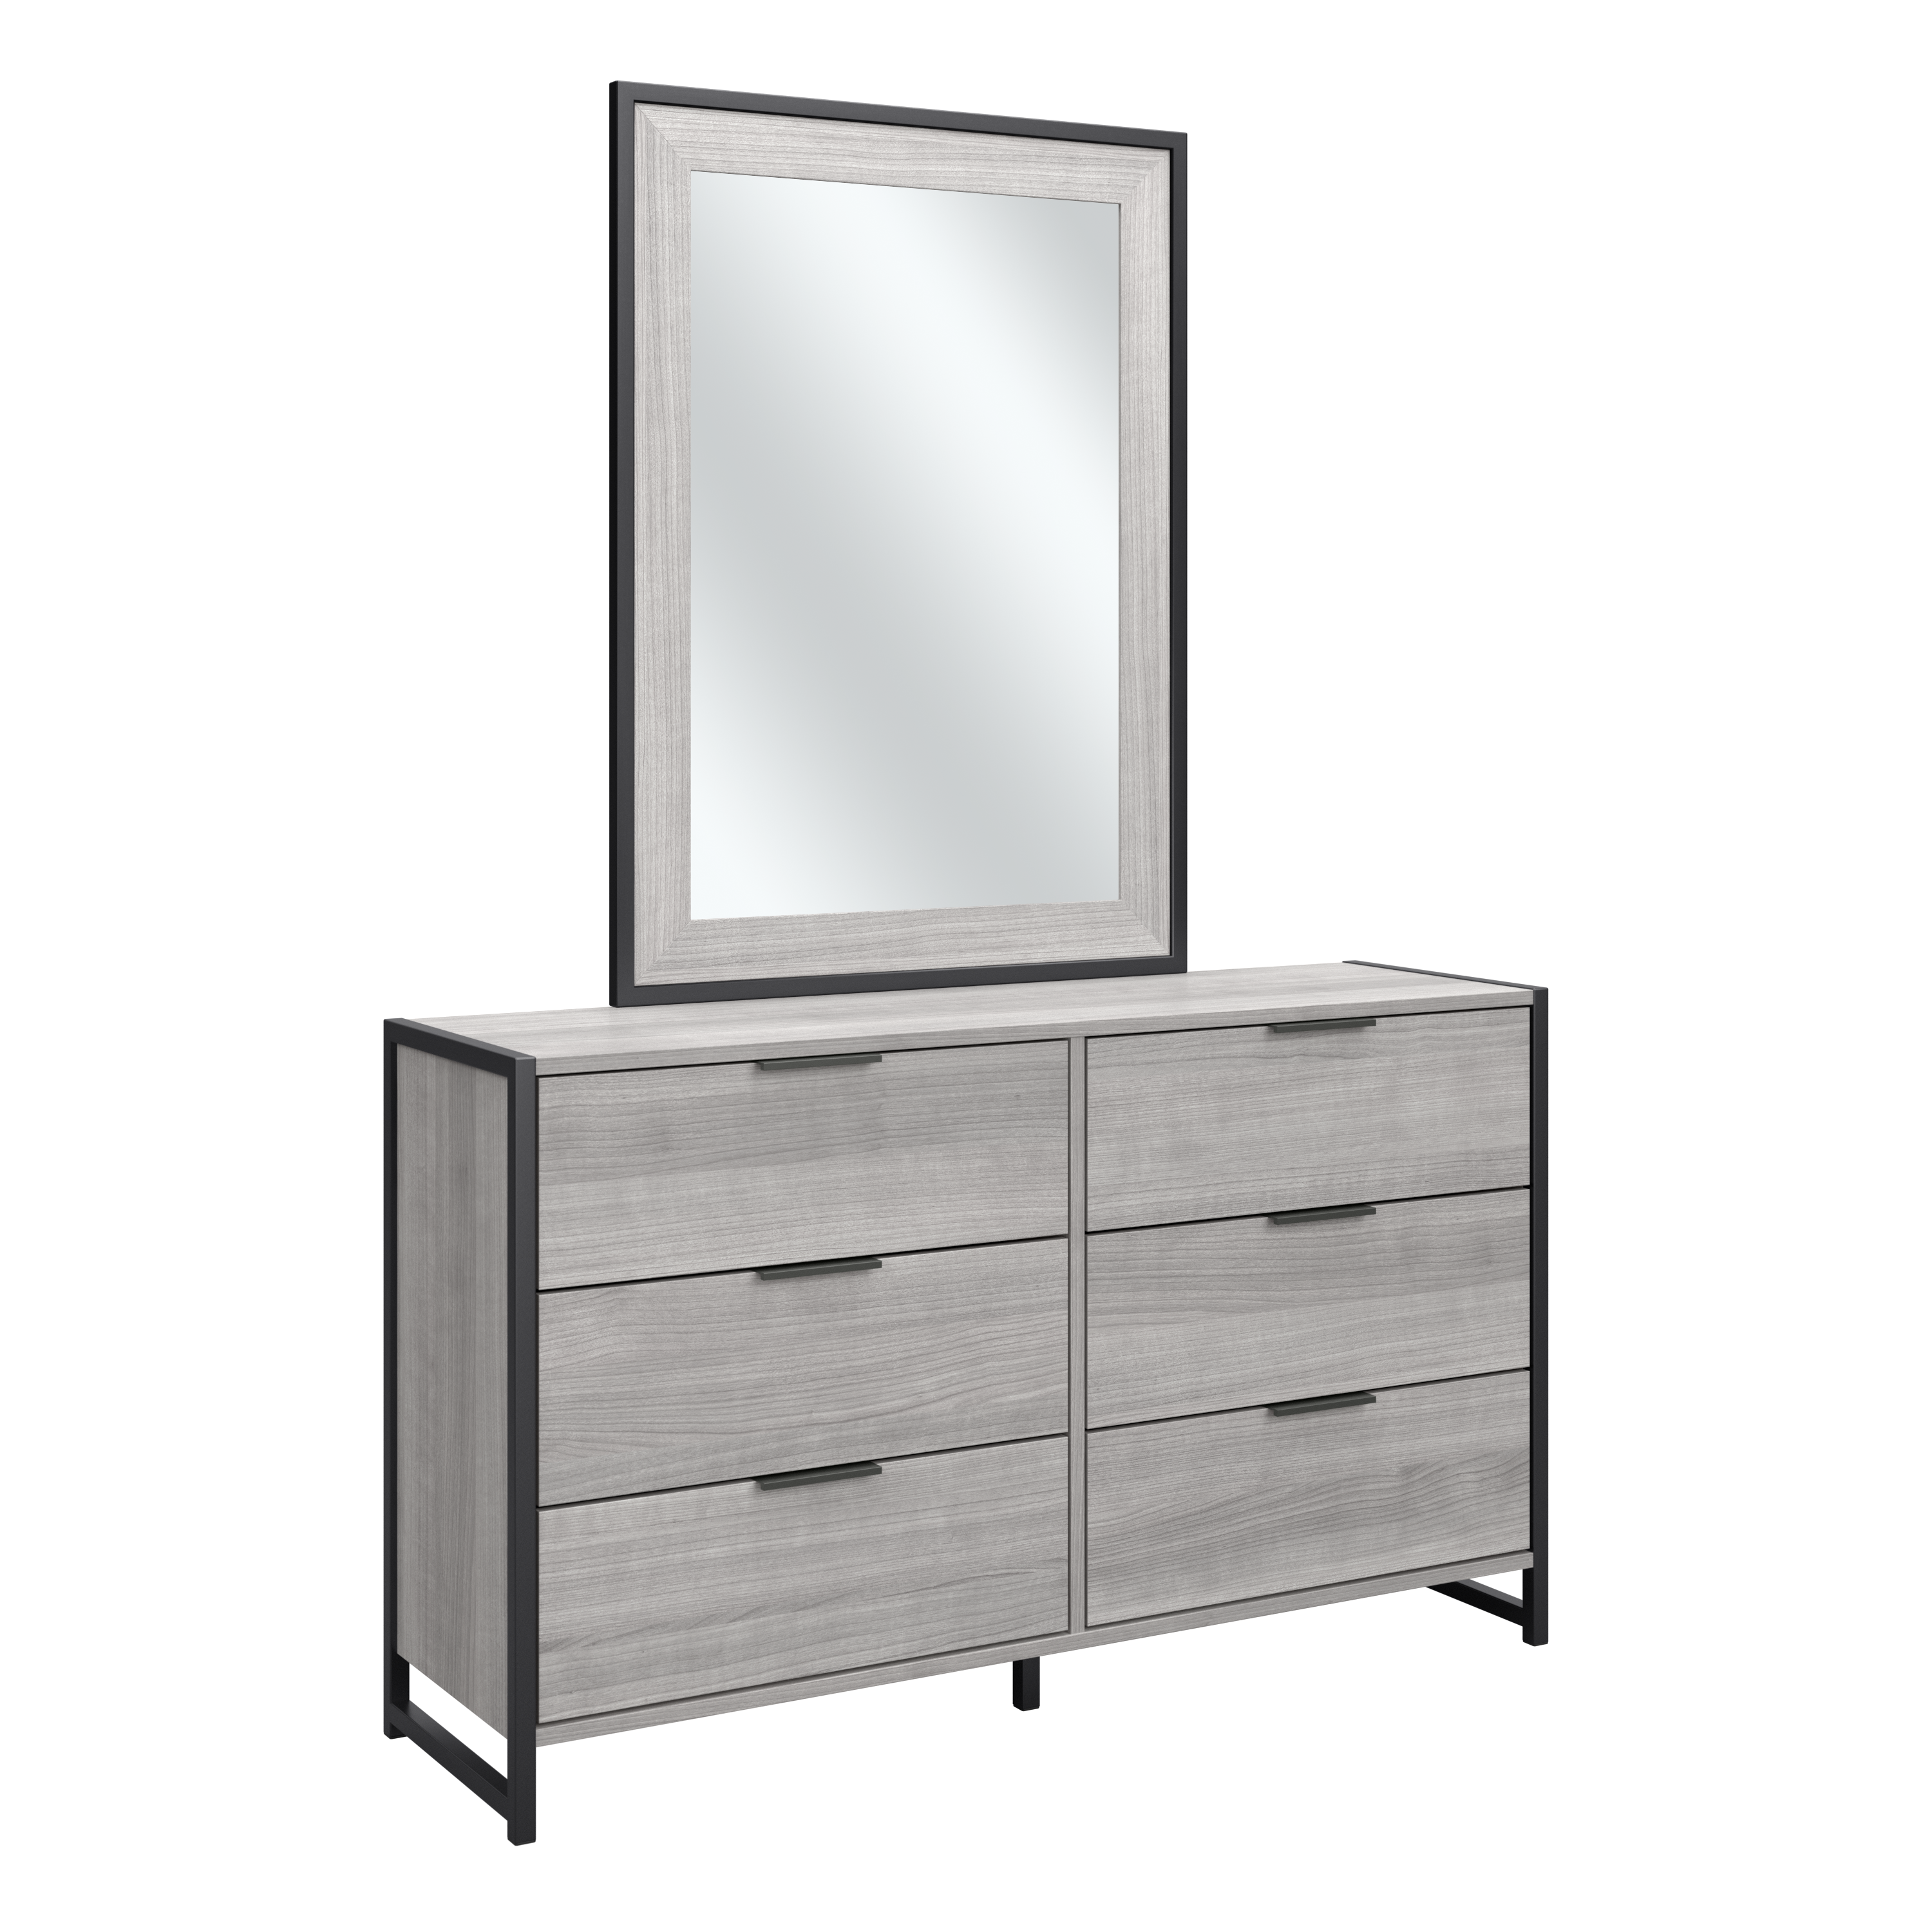 Shop Bush Furniture Atria 6 Drawer Dresser with Mirror 02 ATR015PG #color_platinum gray